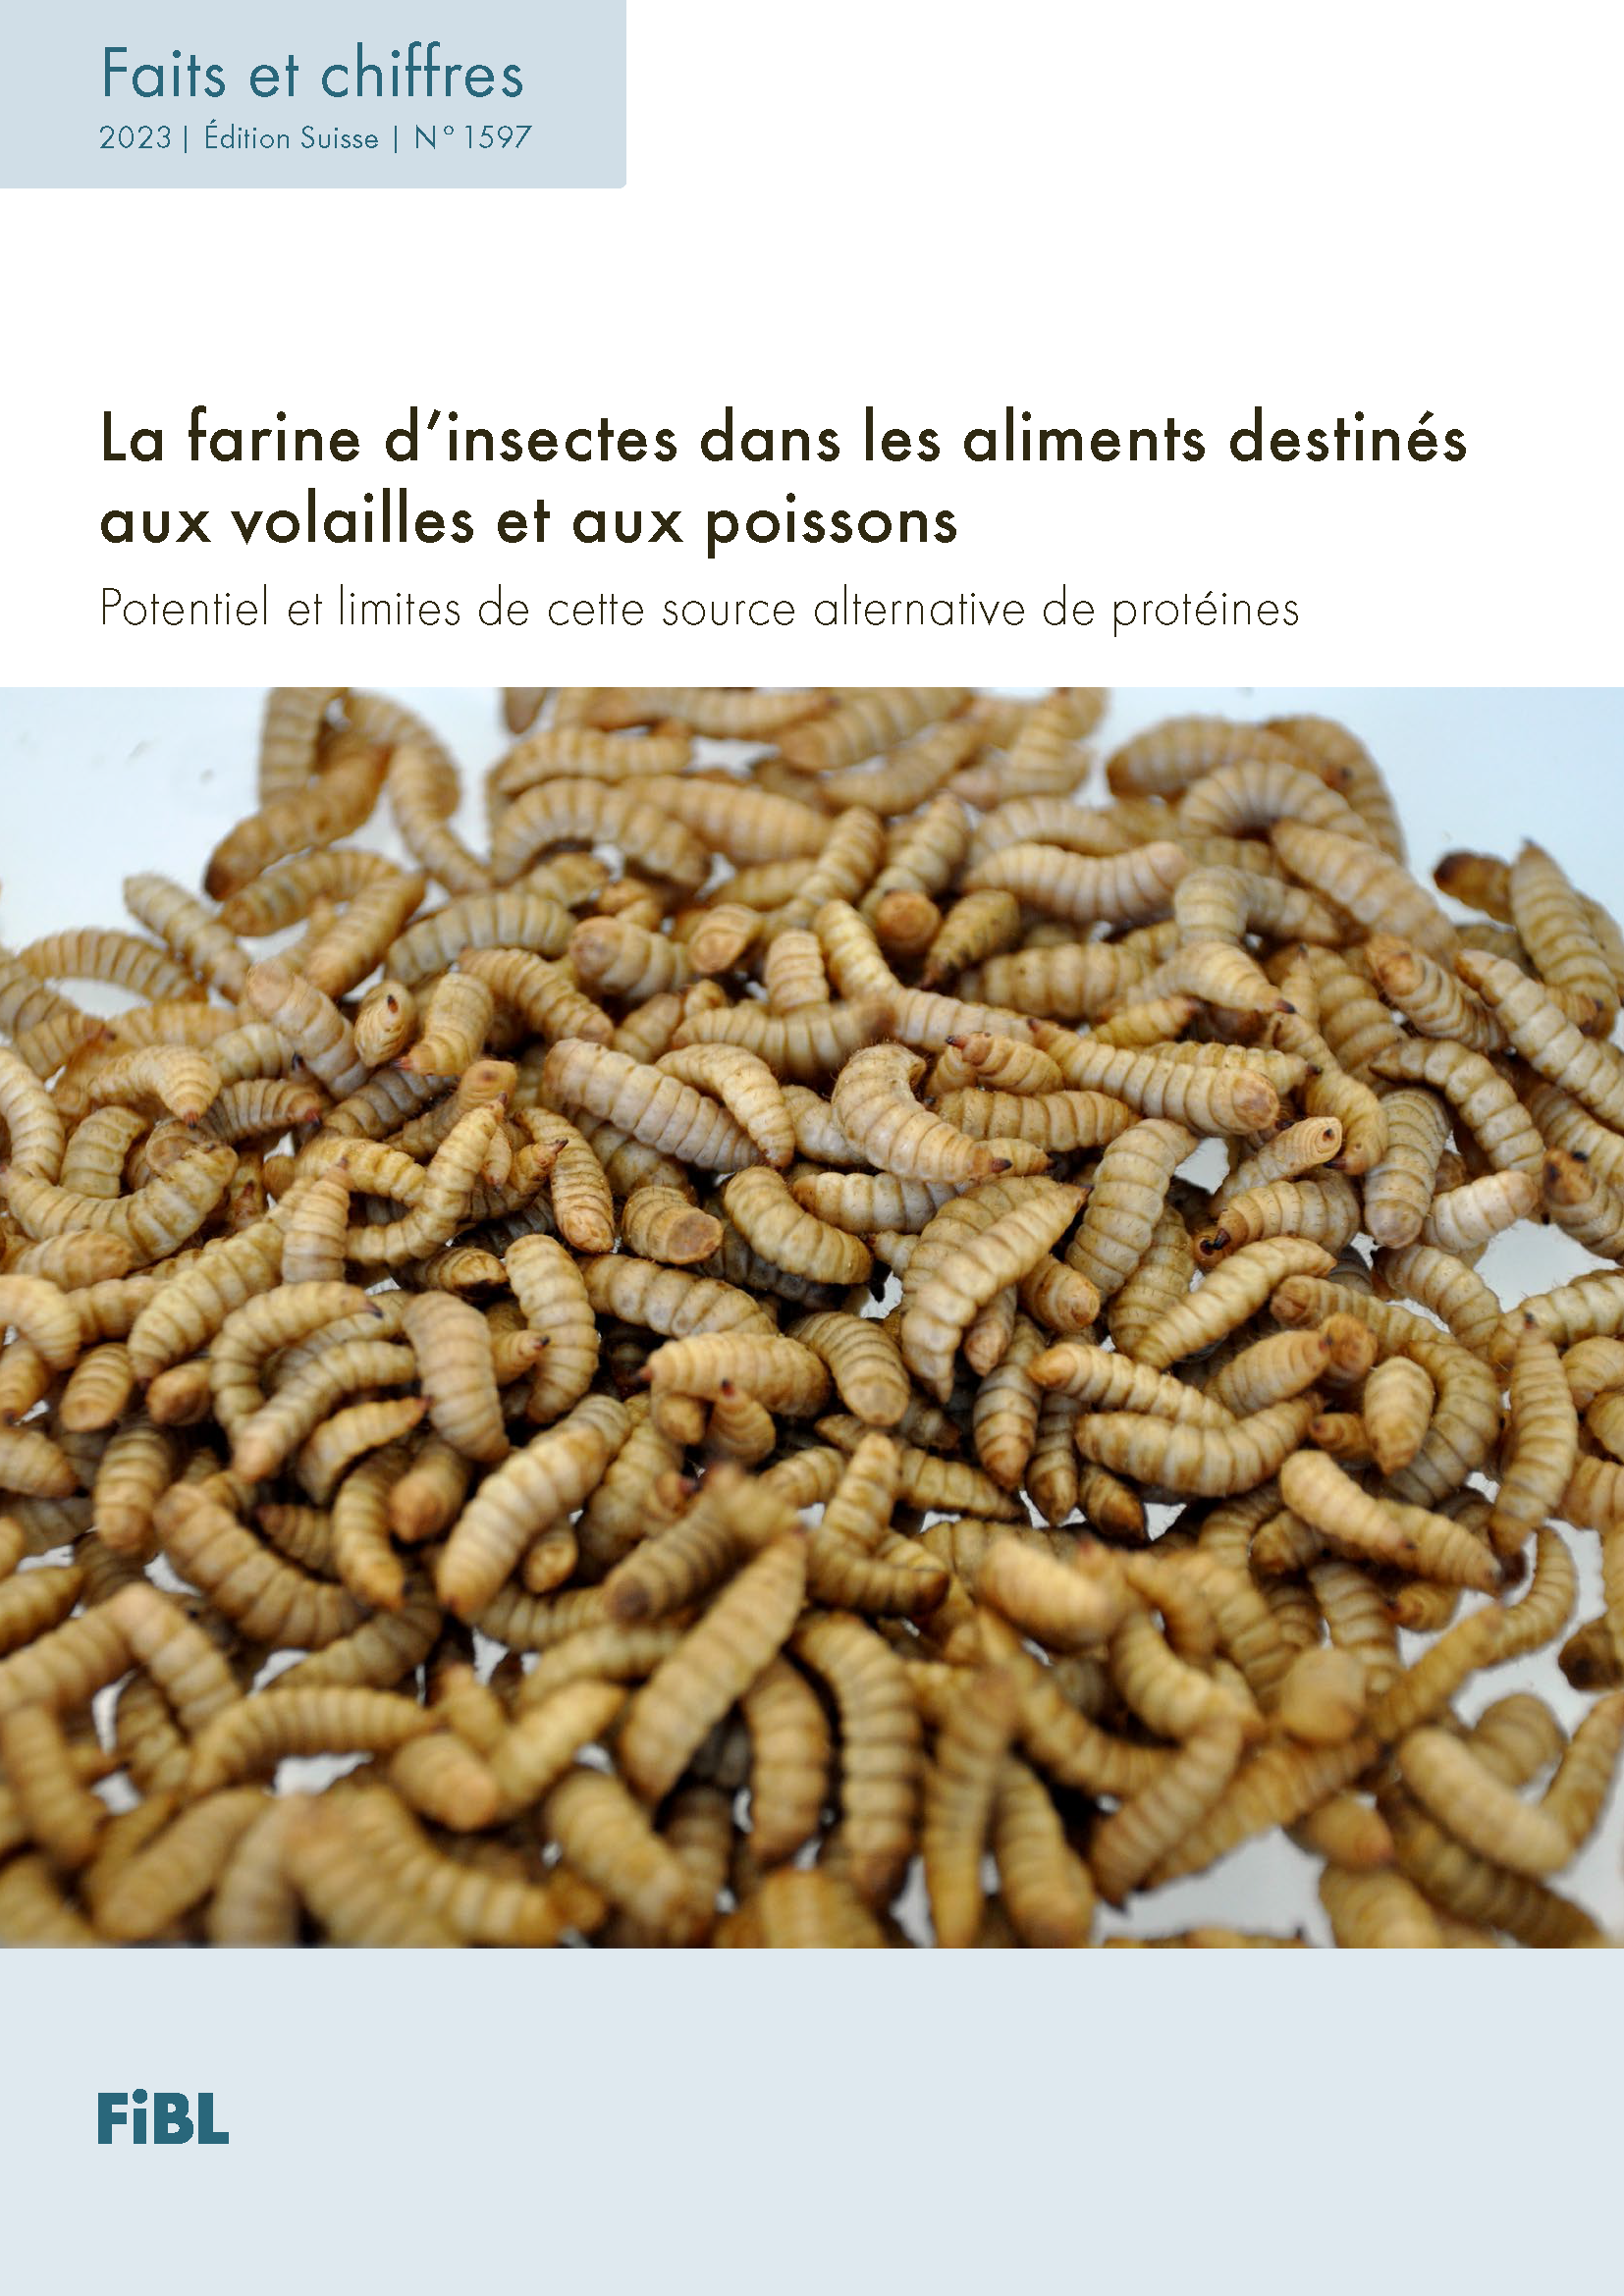 La farine d’insectes dans les aliments destinés aux volailles et aux poissons